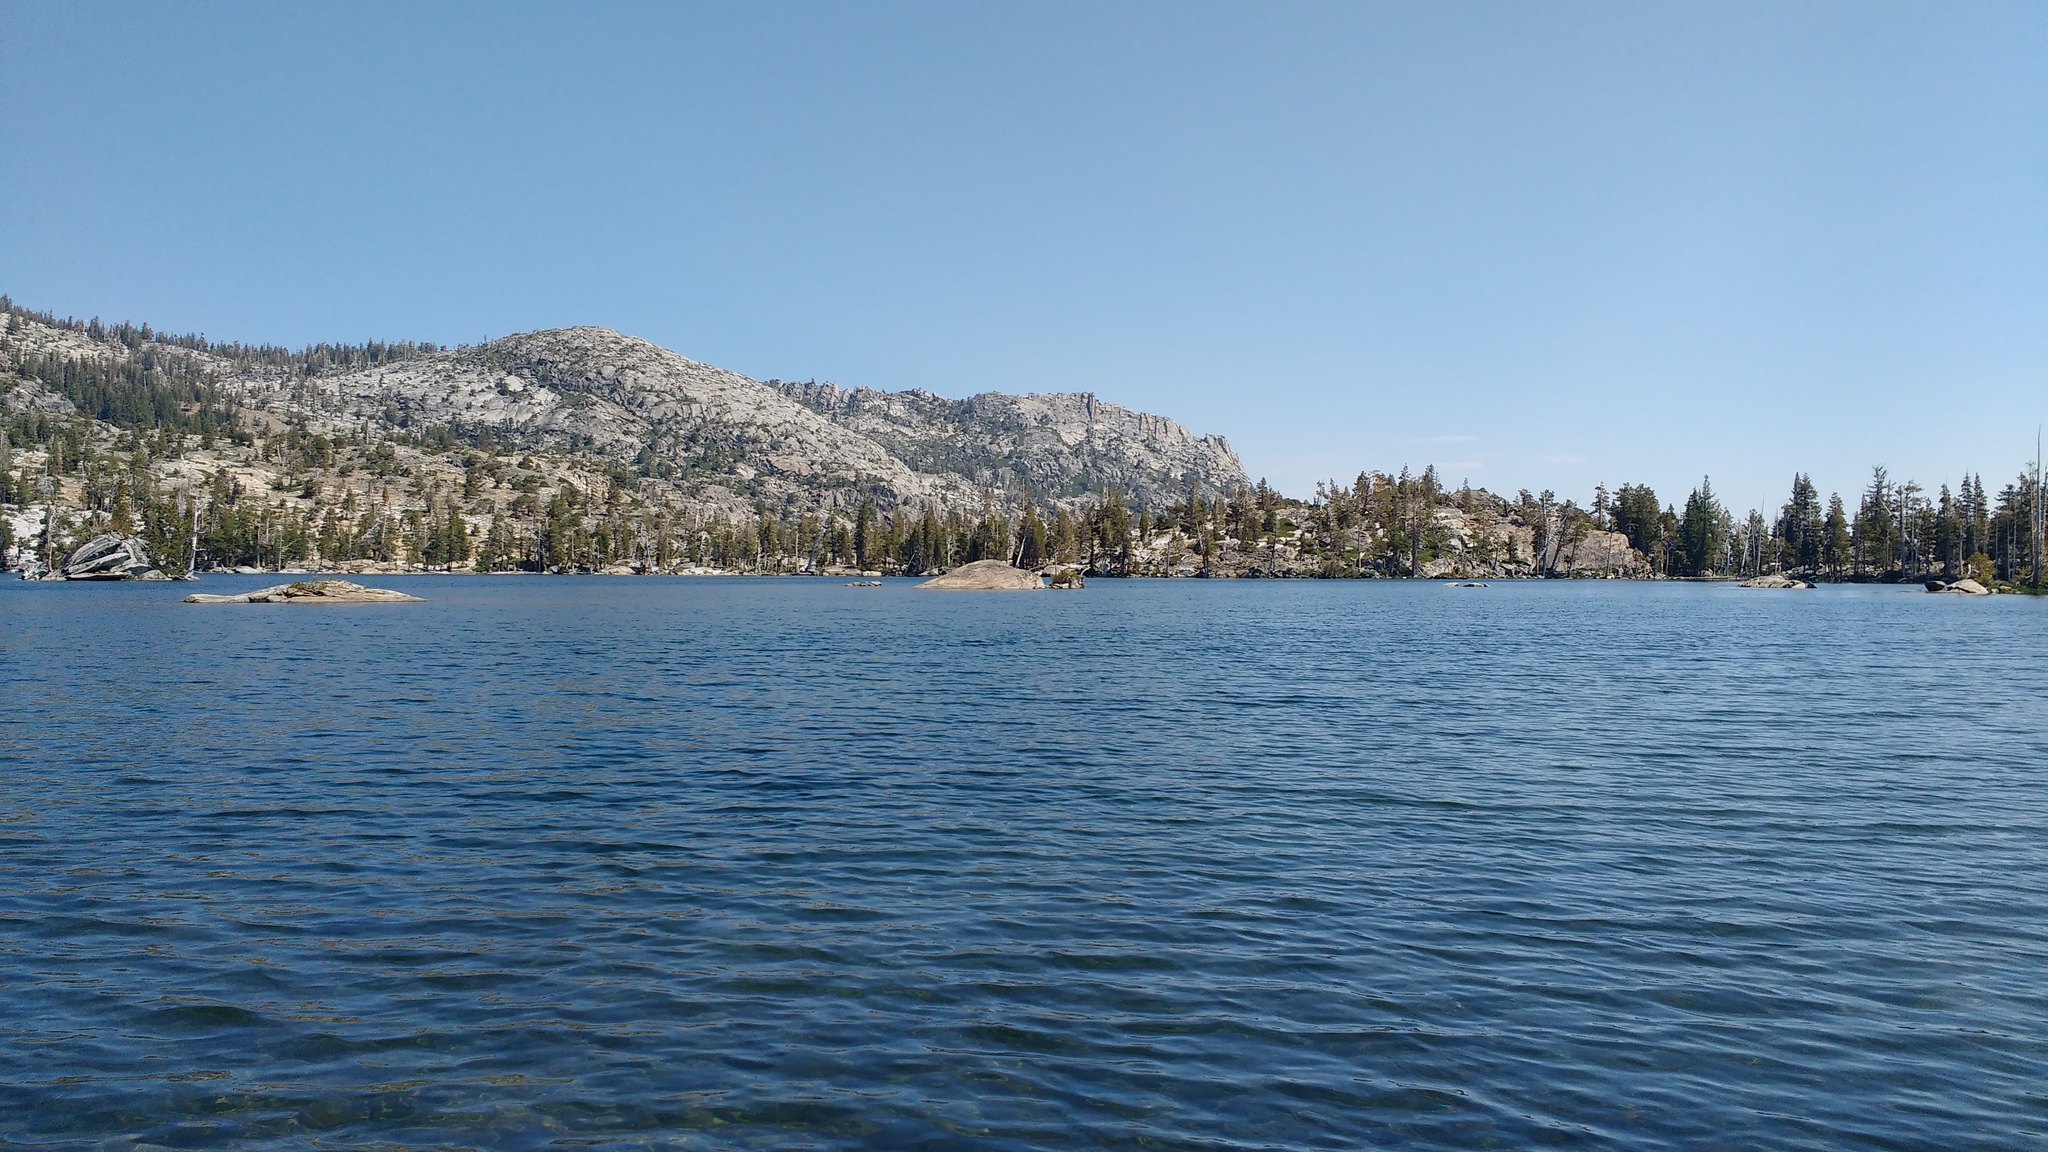 Middle Velma Lake